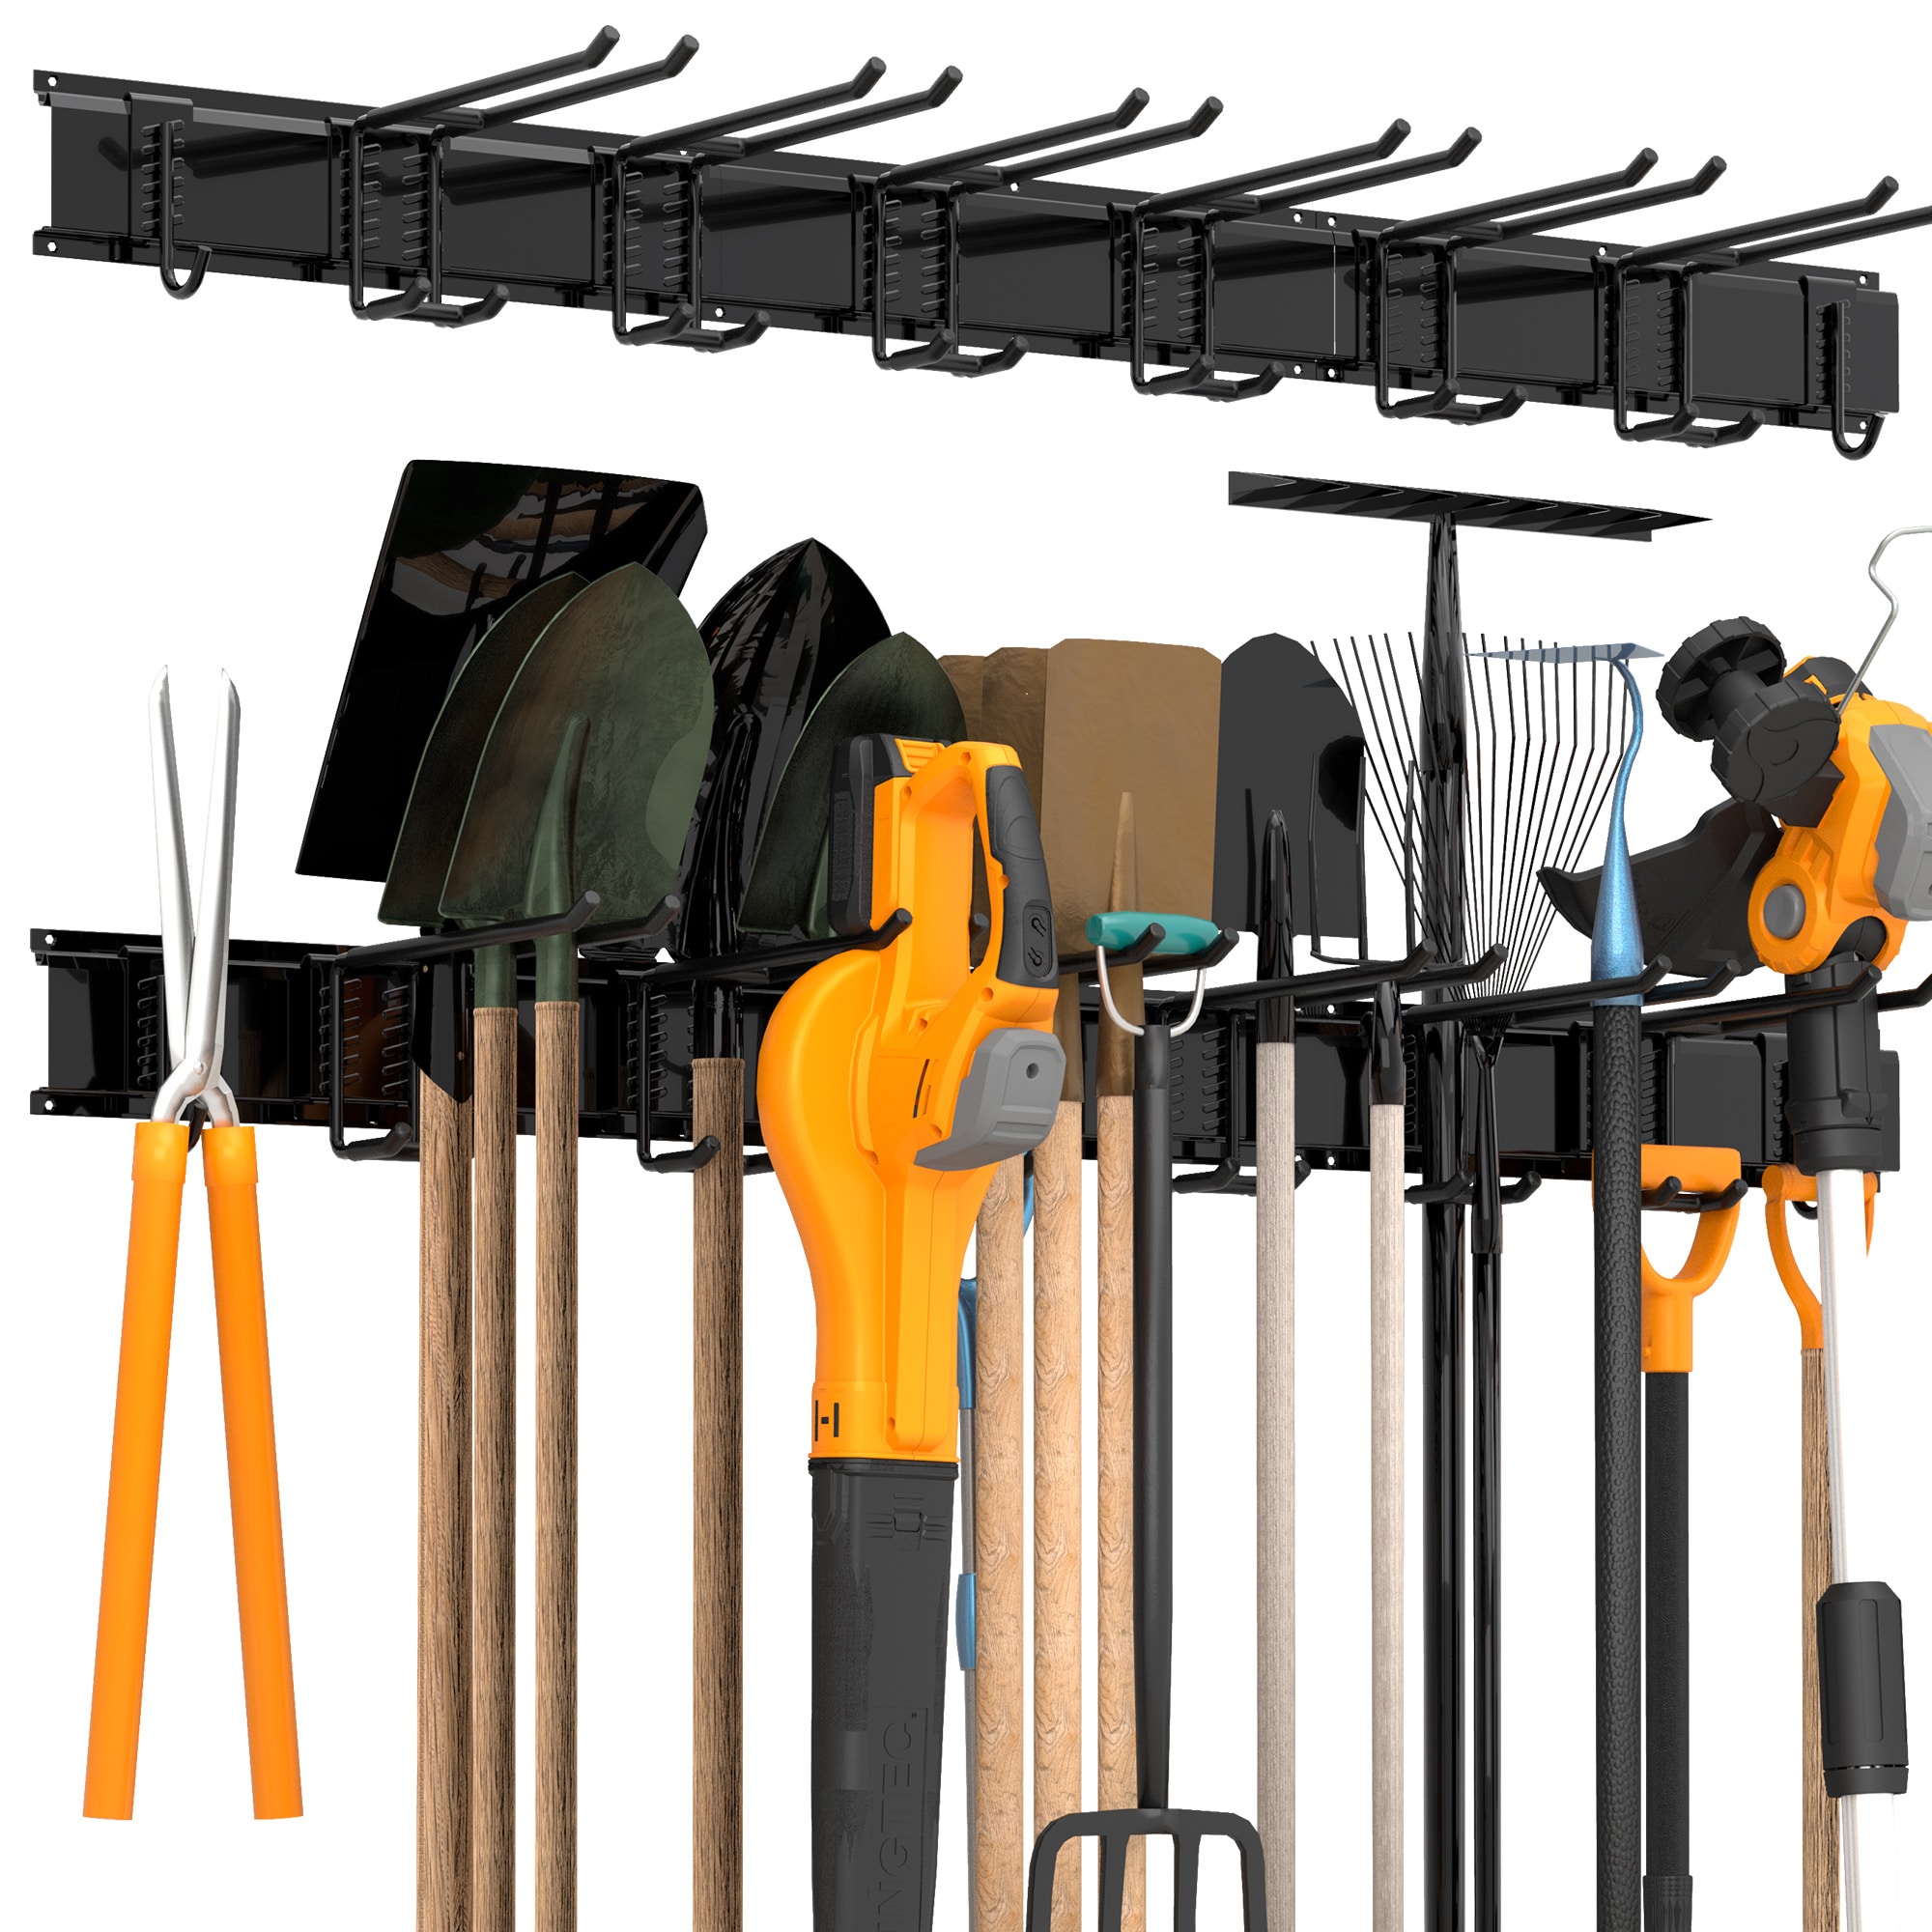 6 PCS Multifunction Bike Hooks Hanger Garage Garden Tools Organiser Hanging  